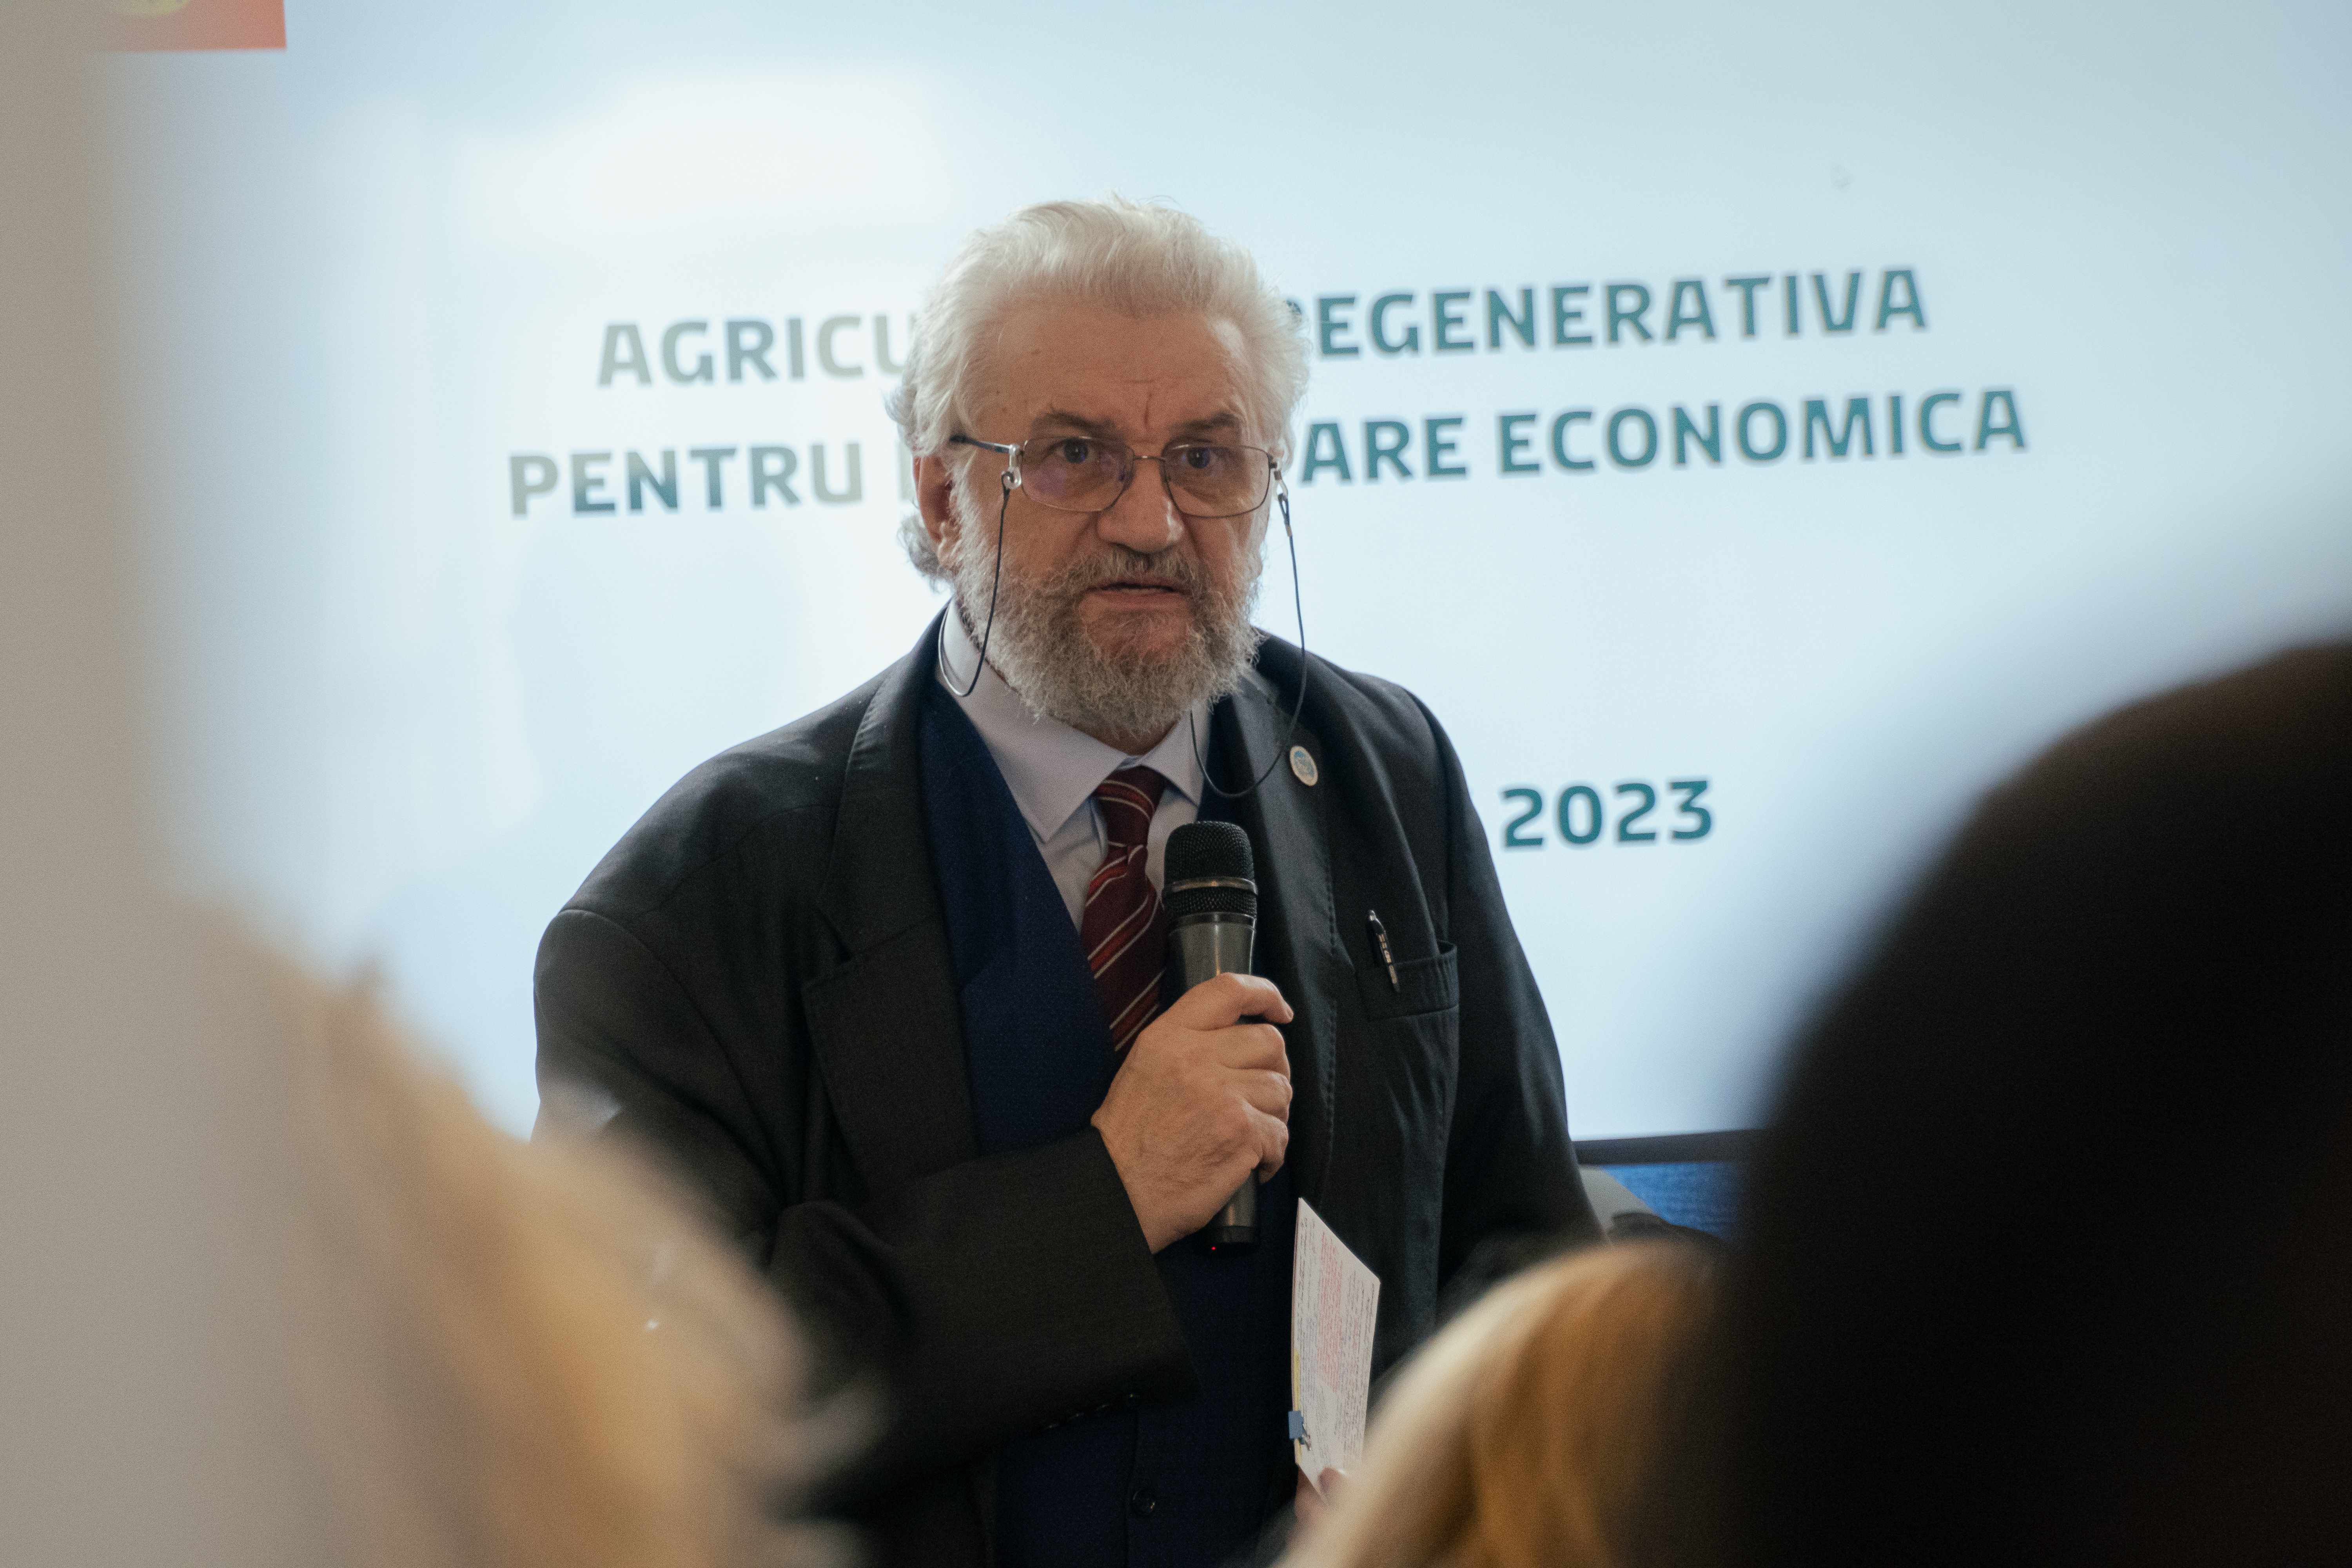 Agreena 2023 Bucuresti Prof. Aurel Badiu 2